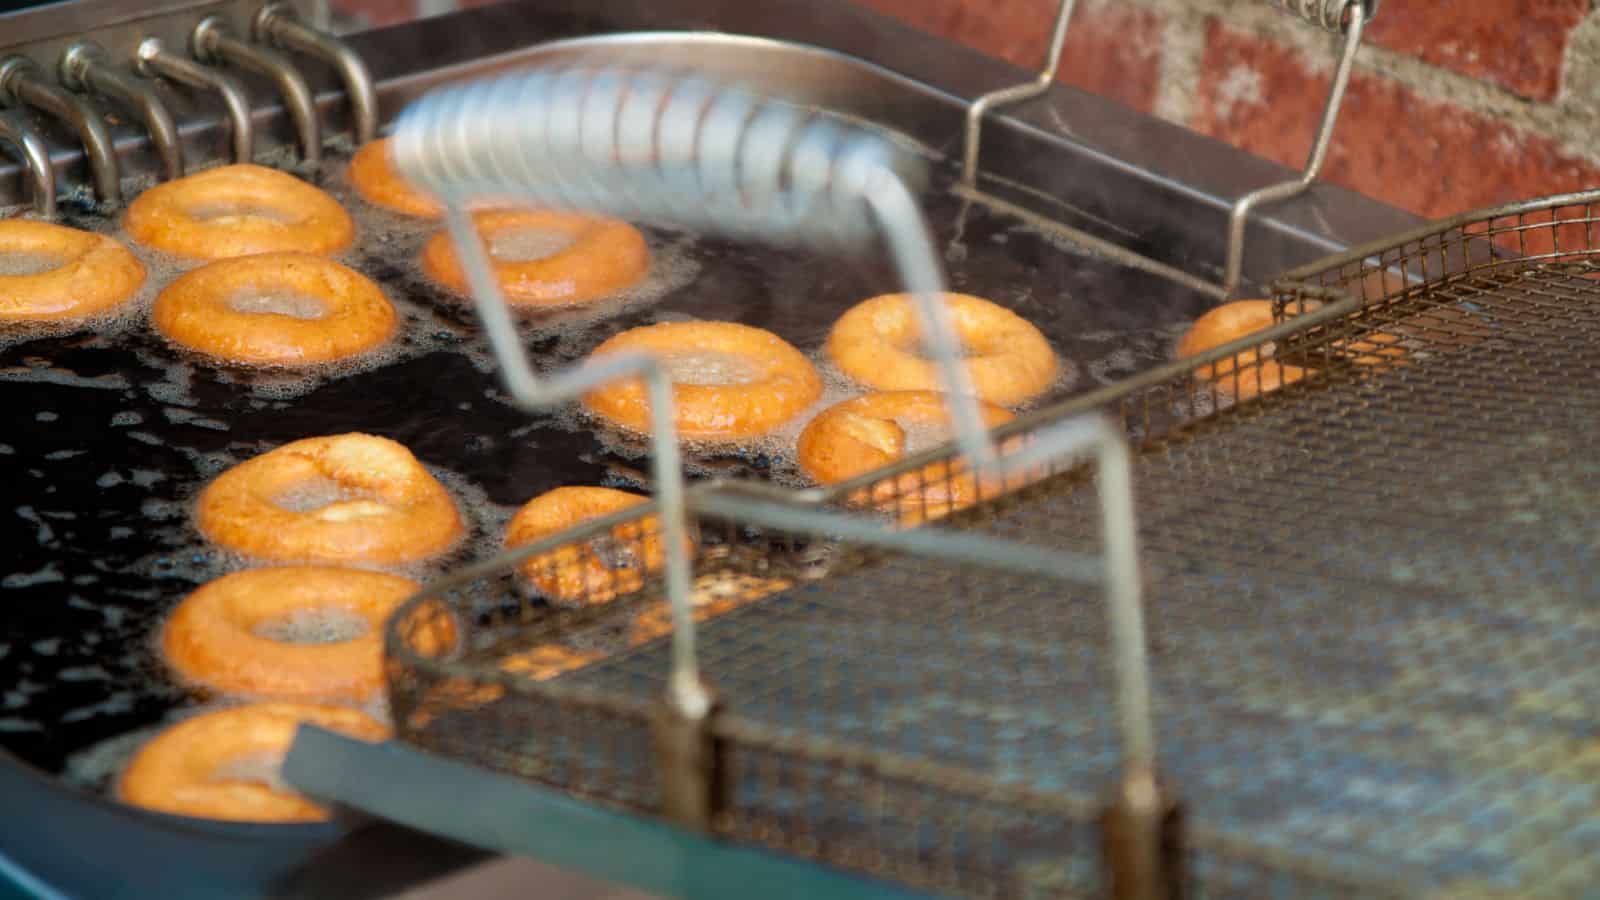 Frying donuts in a deep fryer.